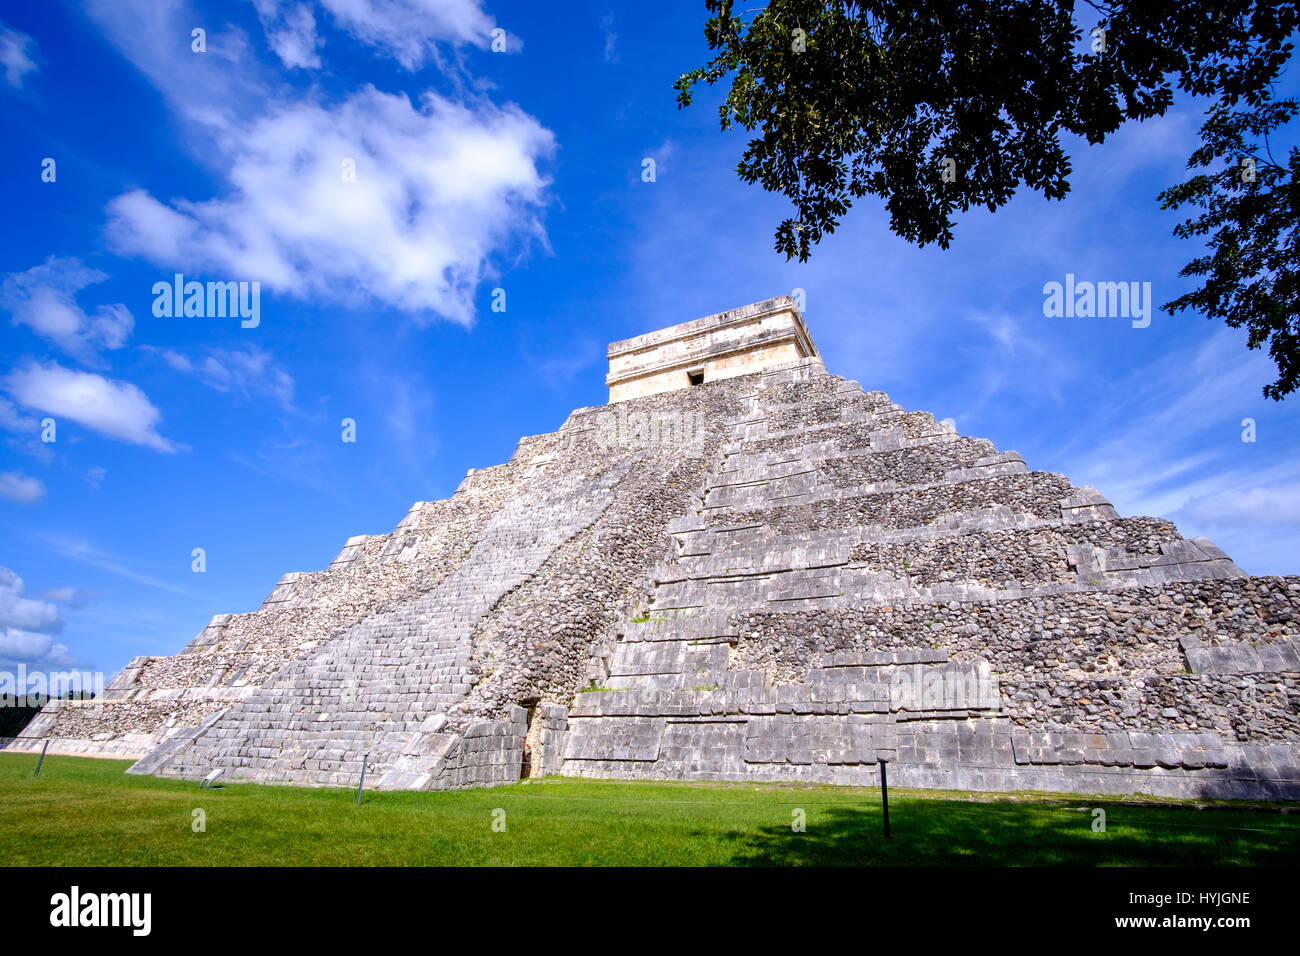 Scenic view of Mayan pyramid El Castillo in Chichen Itza, Mexico Stock Photo